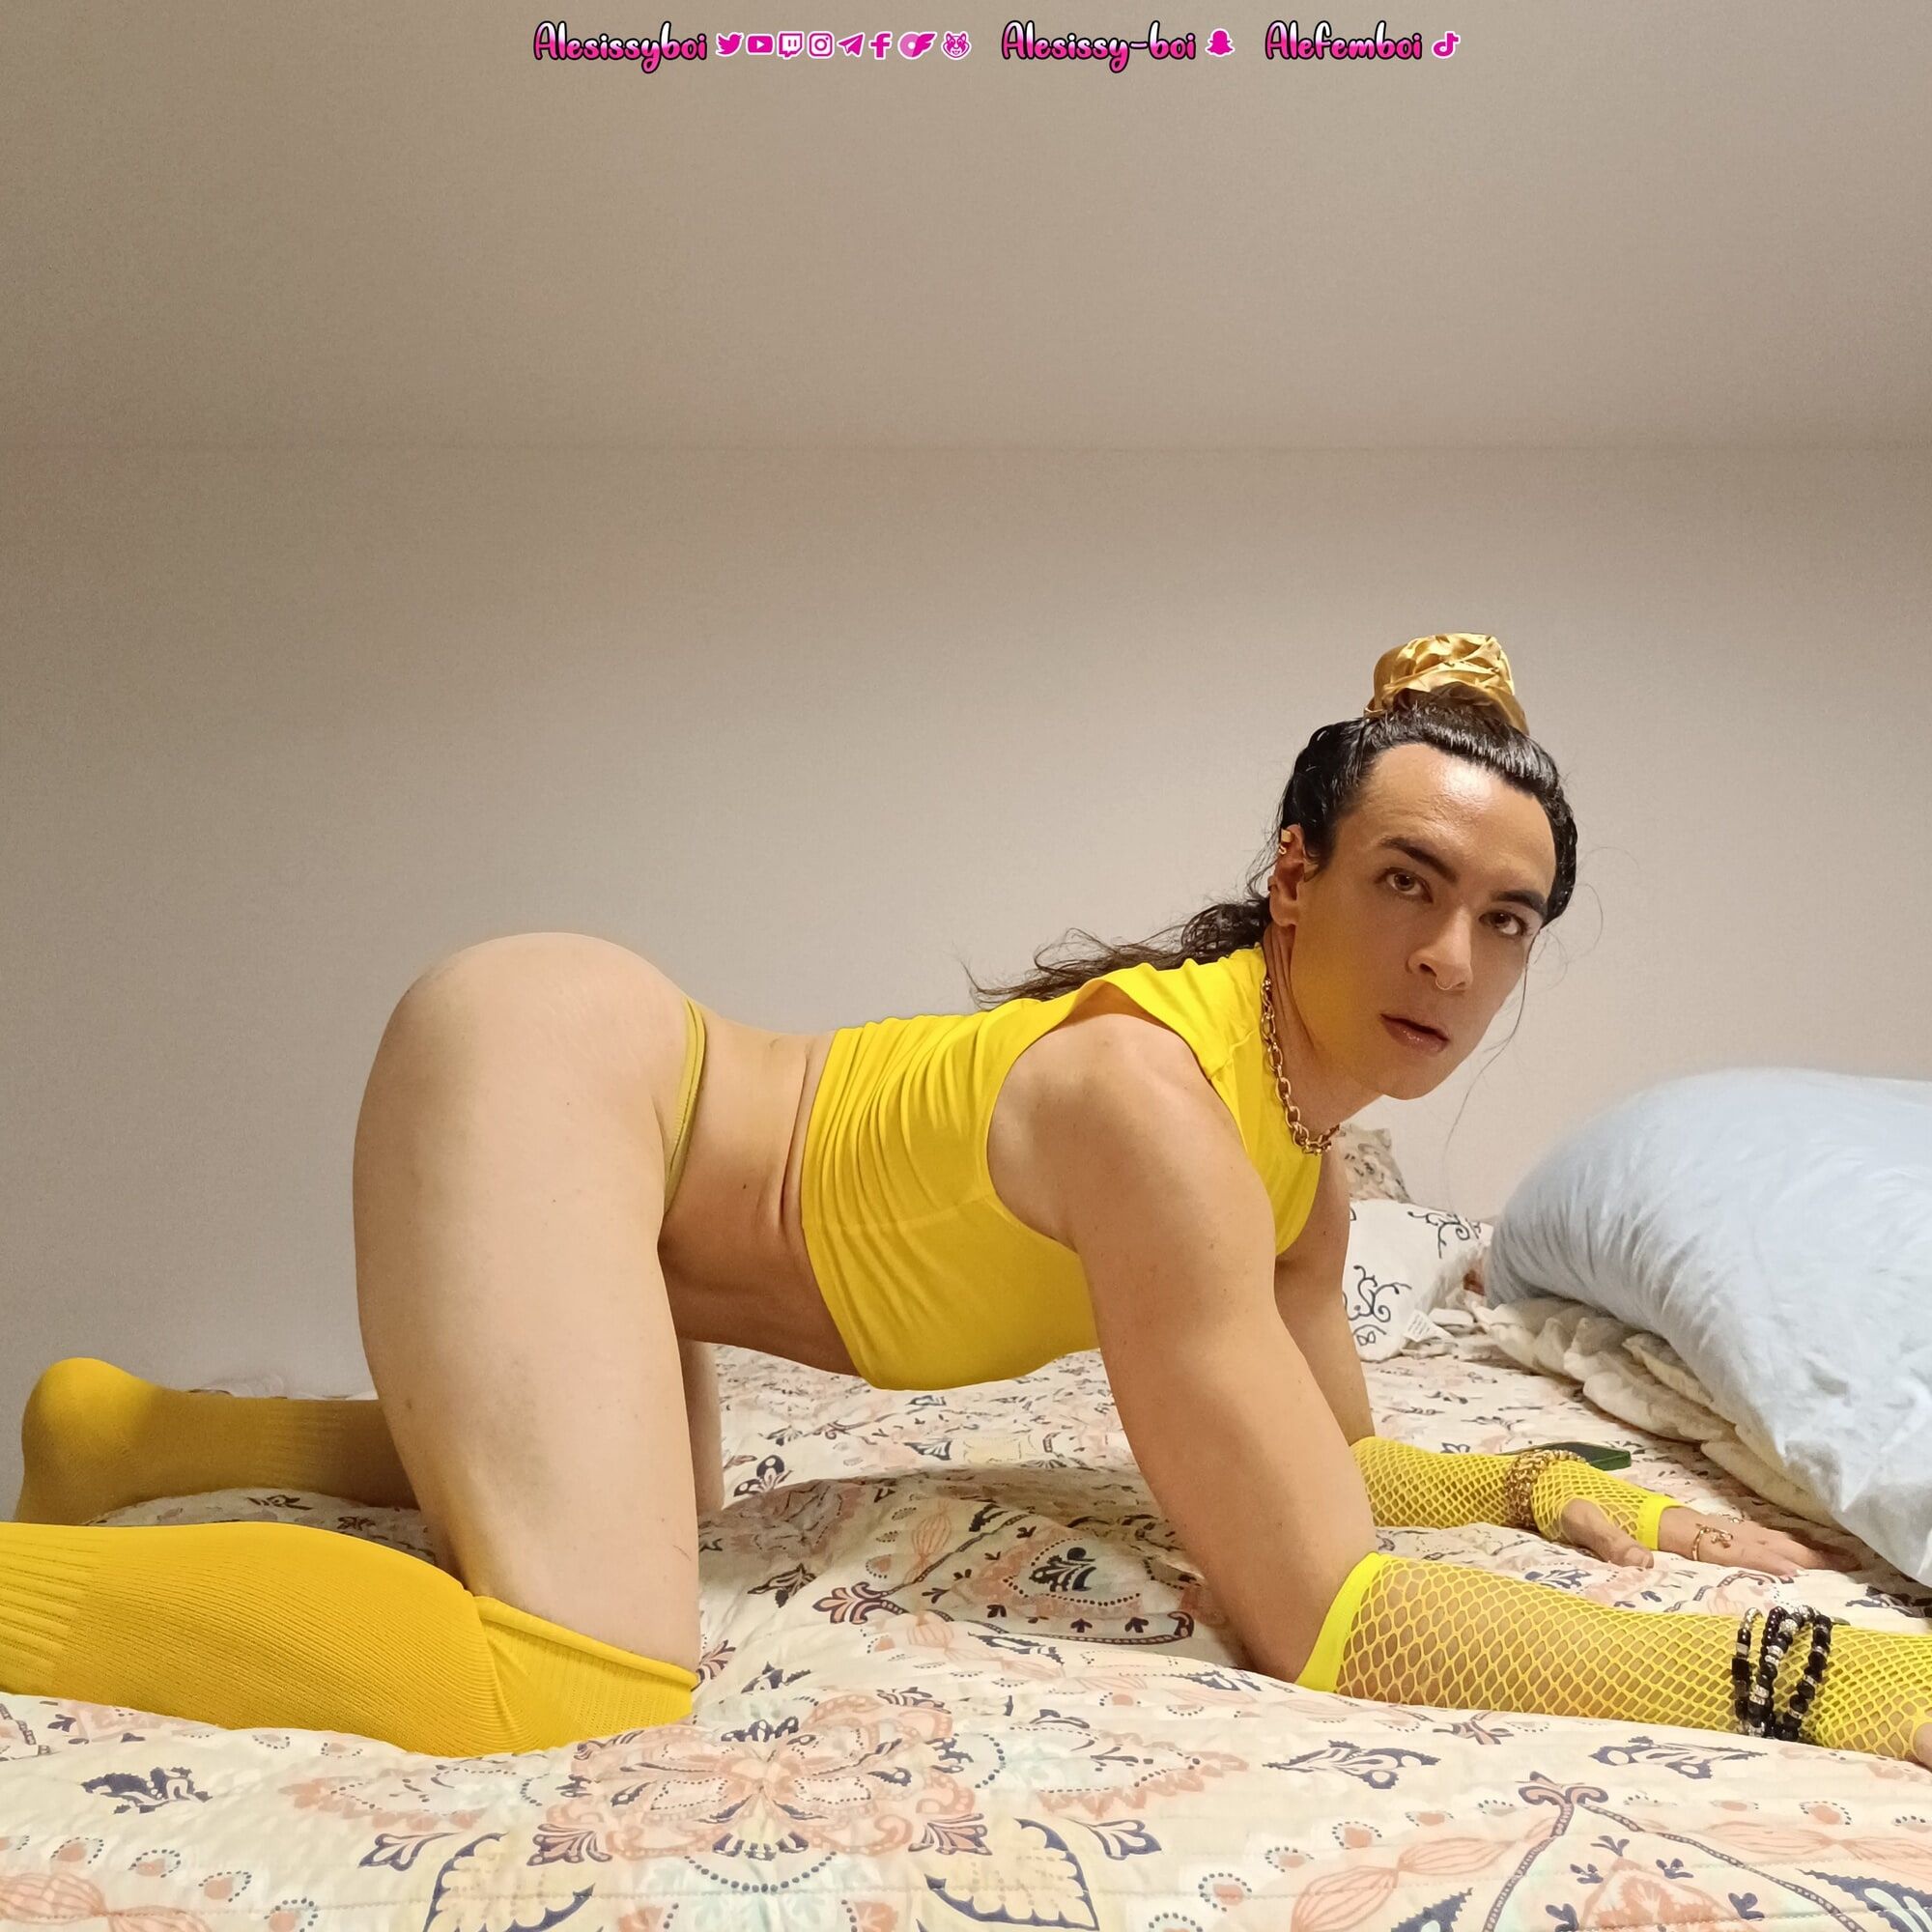 Sissyboi femboi  Yellow lingerie outfit #10